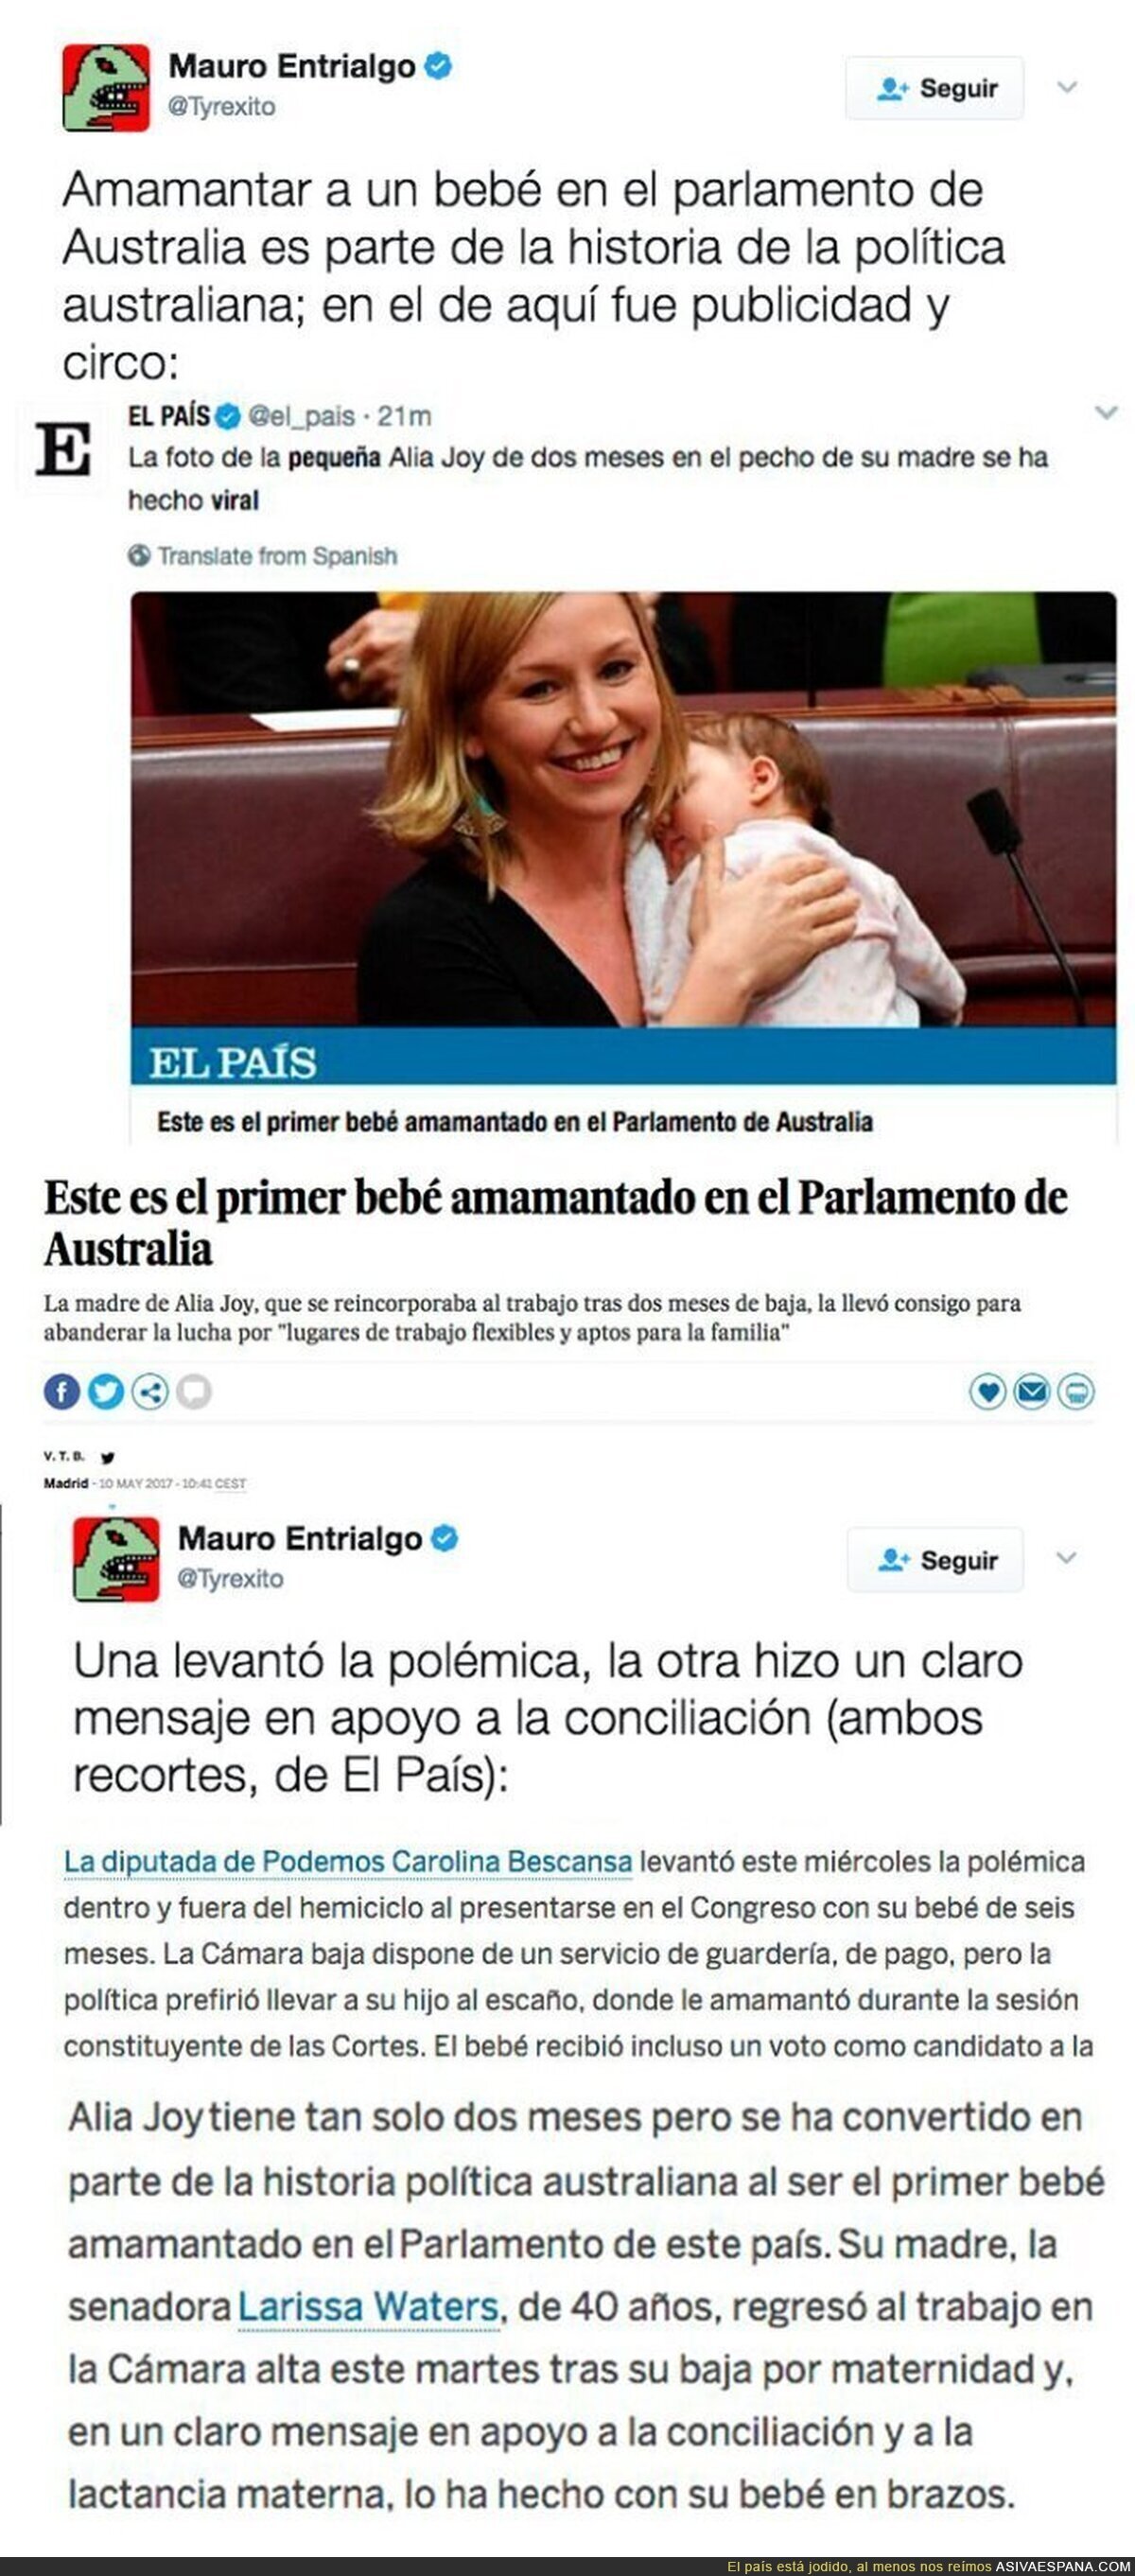 El País queda retratado cuando la madre que lleva a su bebé al trabajo es de Australia o de Podemos